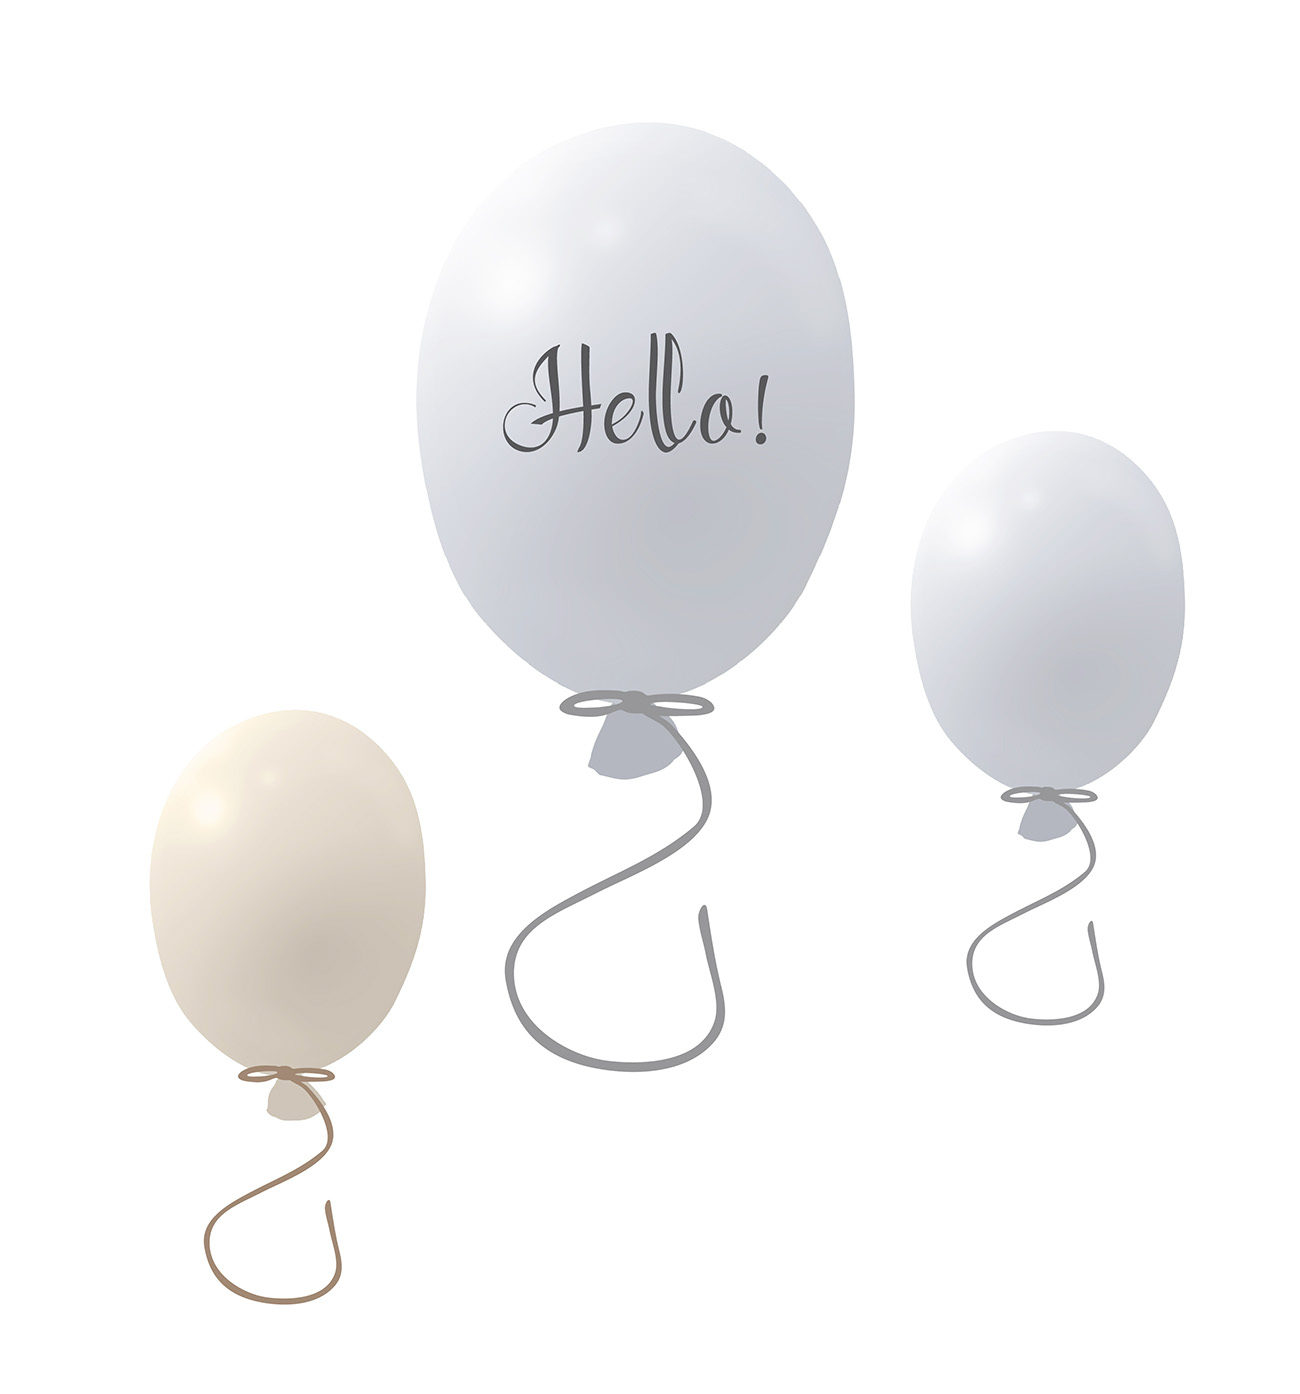 Väggklistermärke partyballonger 3-pack, grey 